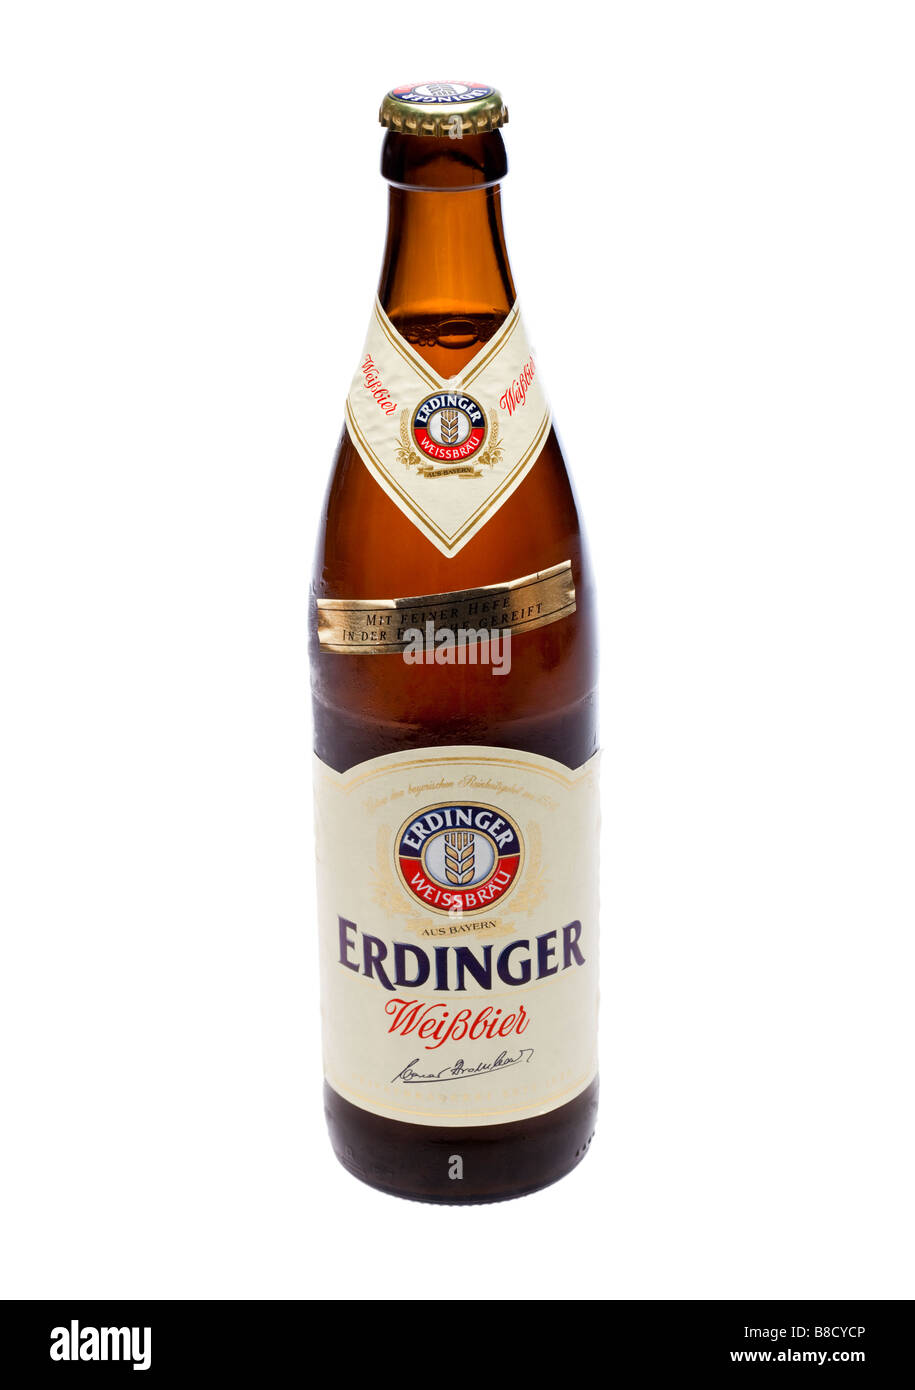 German beer bottle -Fotos und -Bildmaterial in hoher Auflösung – Alamy